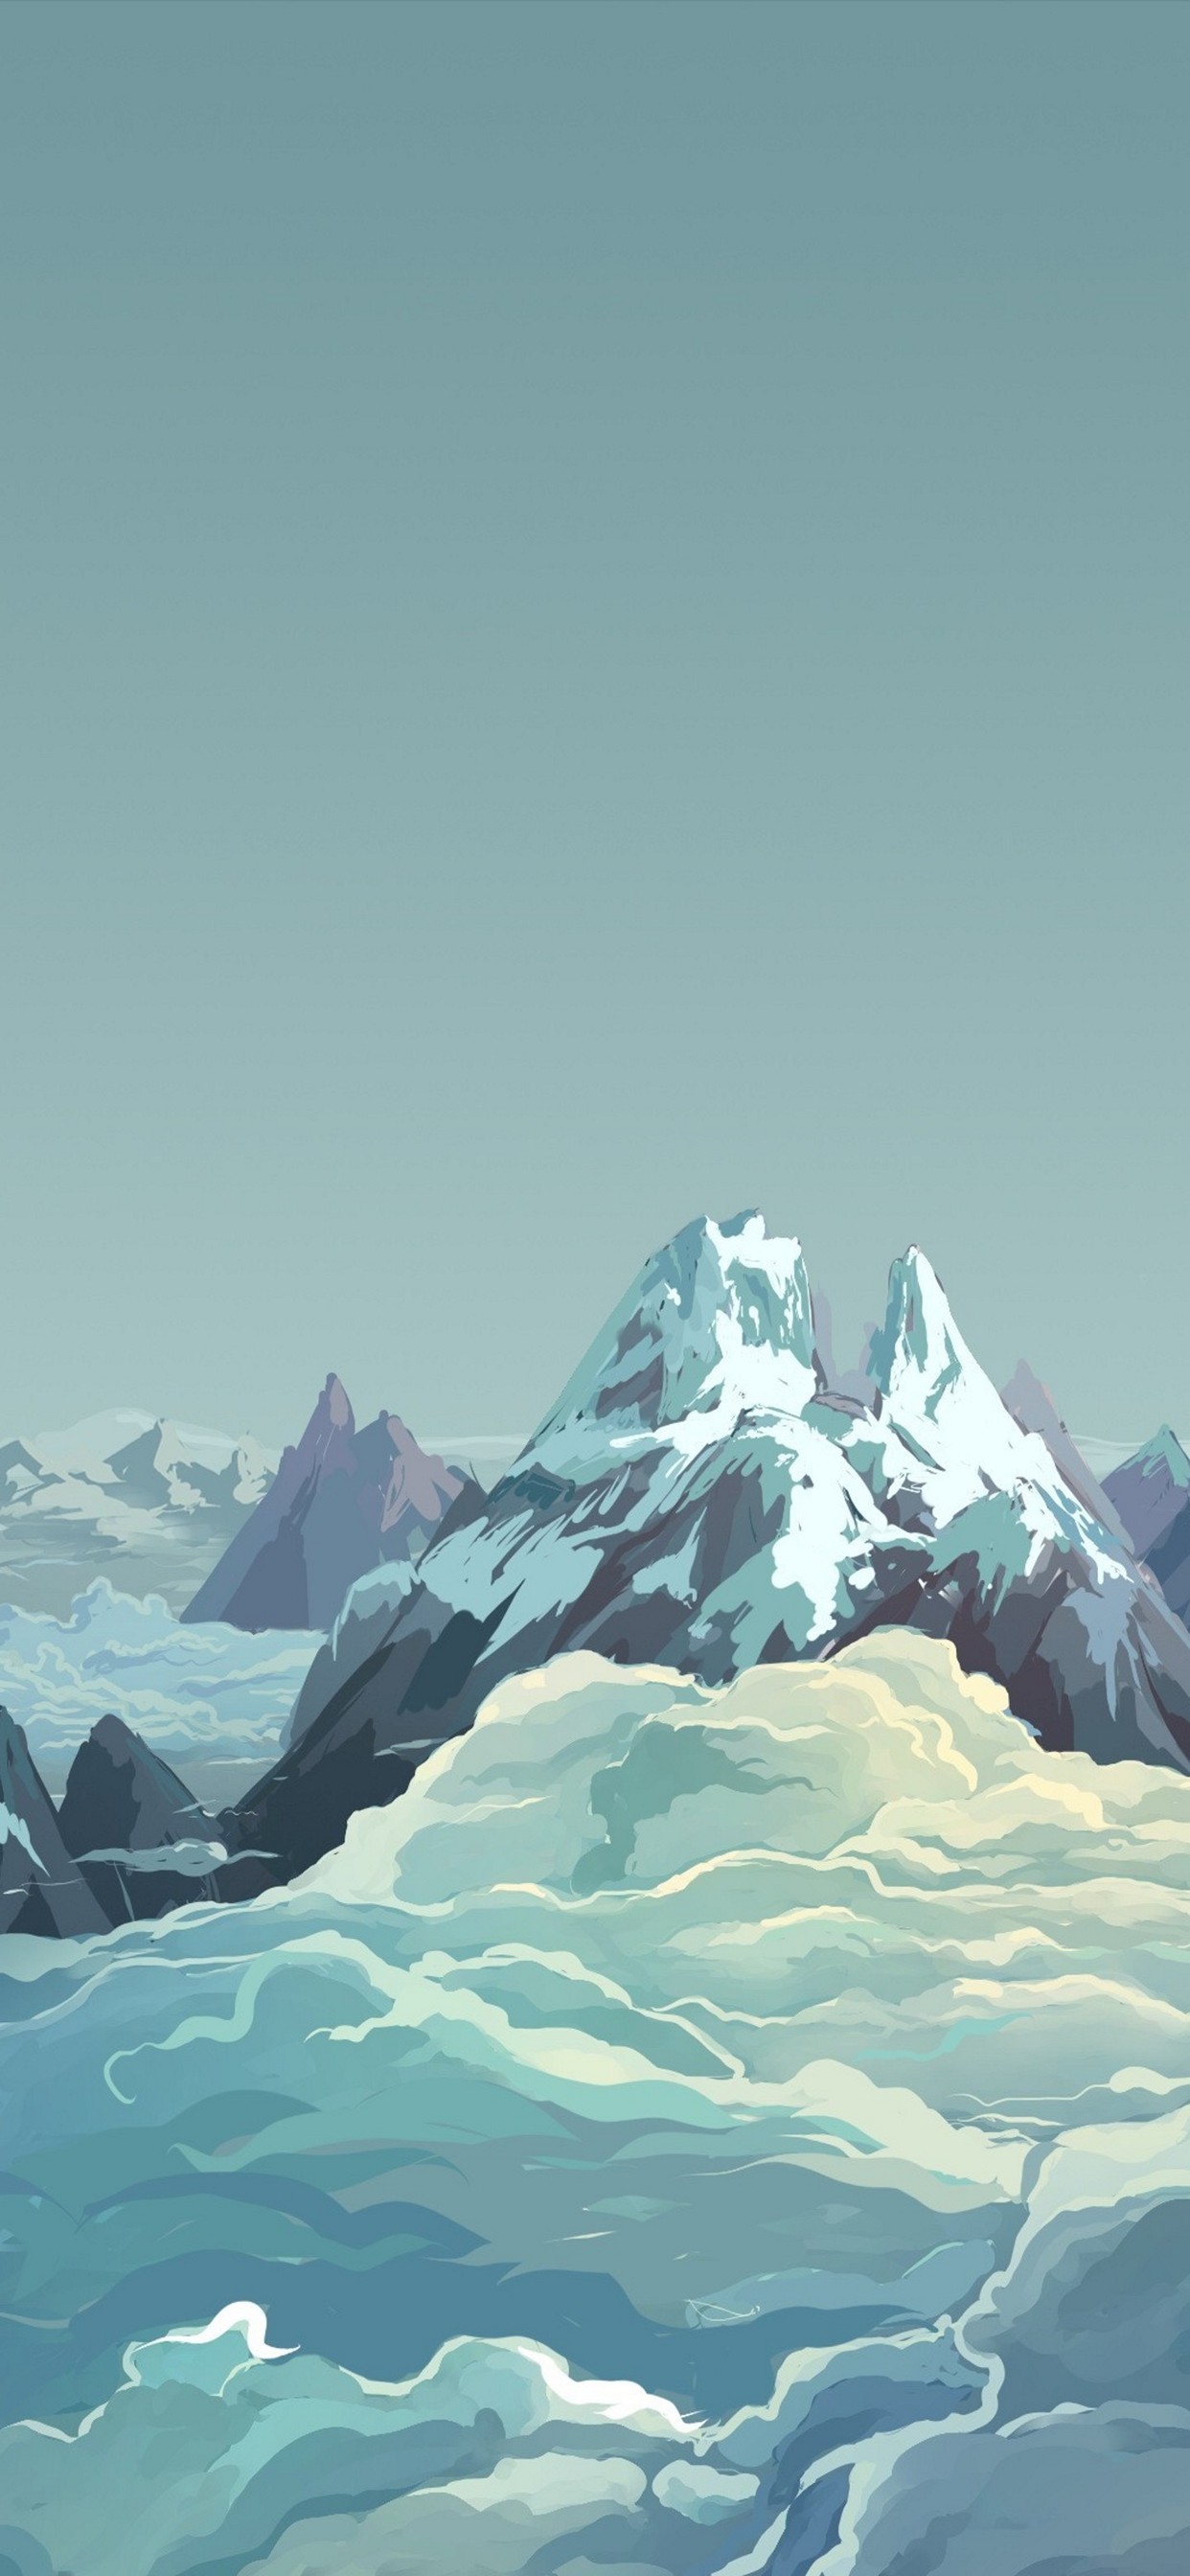 綺麗な雪山と雲海のイラスト Iphone 13 Pro Max 壁紙 待ち受け スマラン